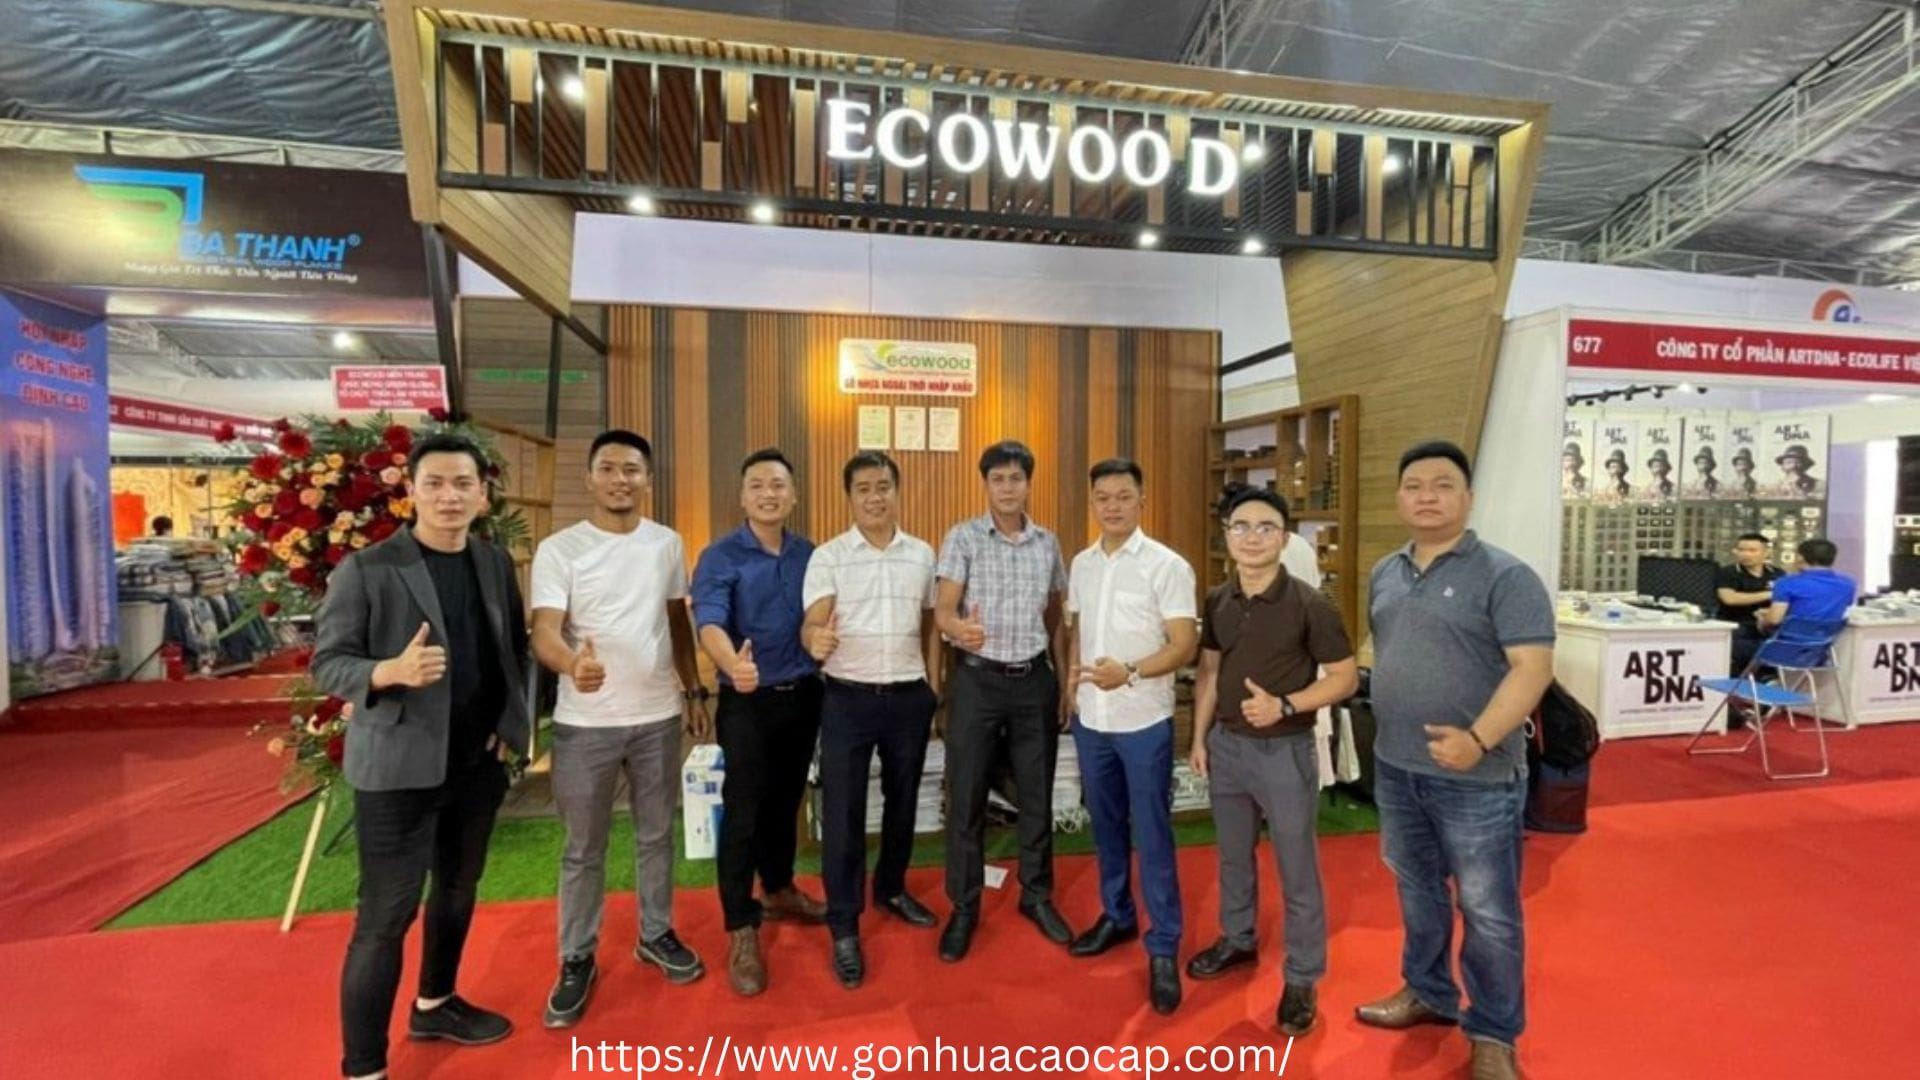 Ecowood Miền Trung - Địa chỉ phân phối nhựa ốp tường Đà Nẵng giá rẻ